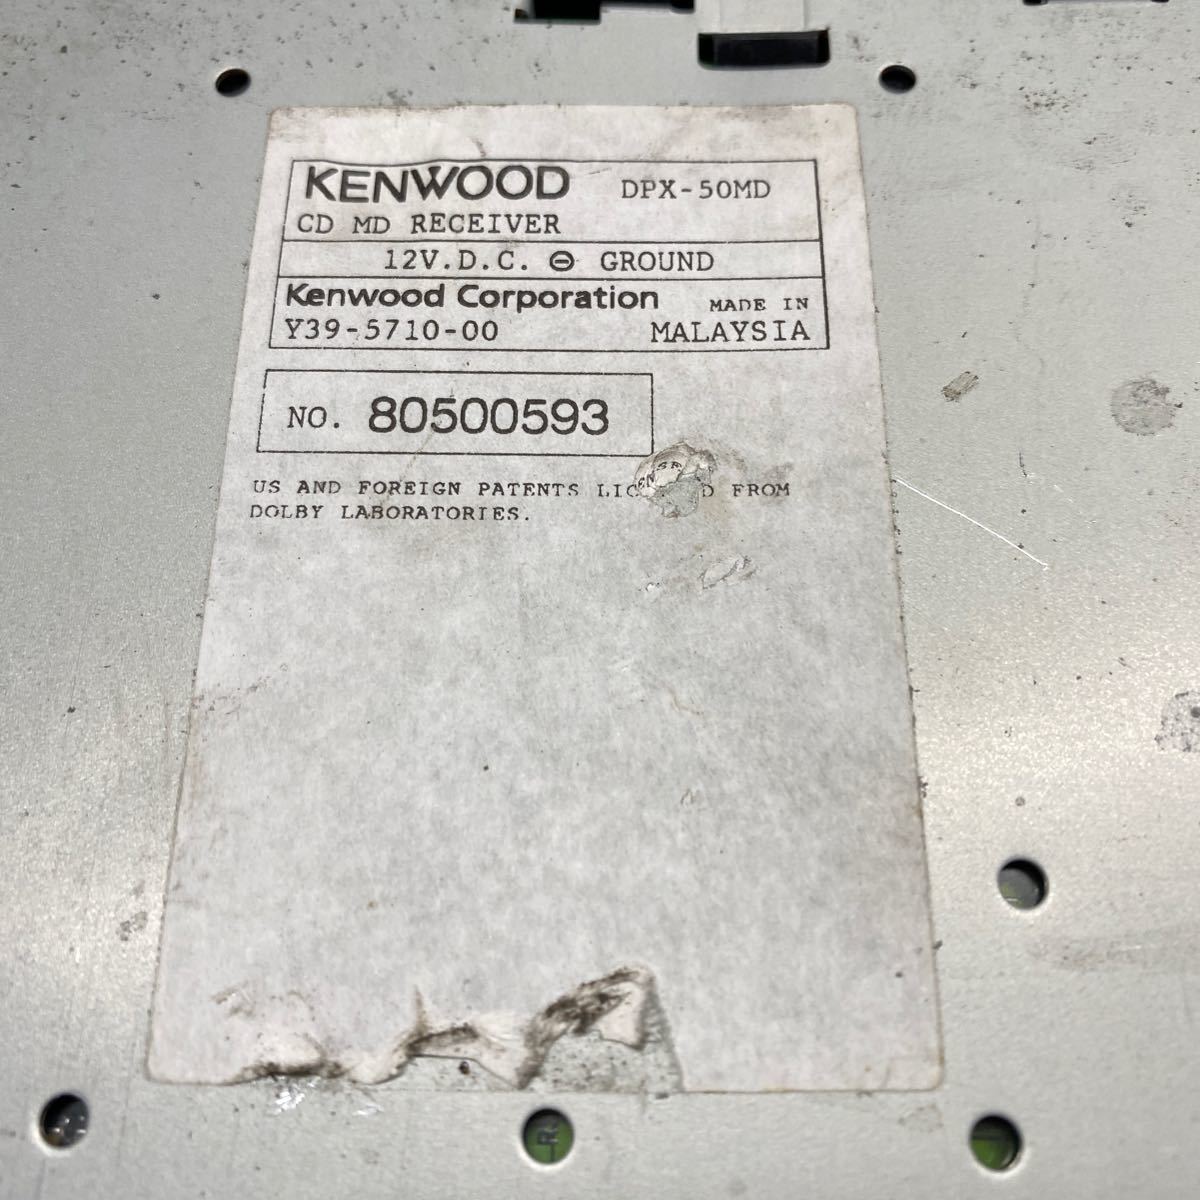 AV11-479 супер-скидка машина стерео KENWOOD DPX-50MD CD MD AUX проверка для электропроводка использование простой рабочее состояние подтверждено б/у текущее состояние товар 